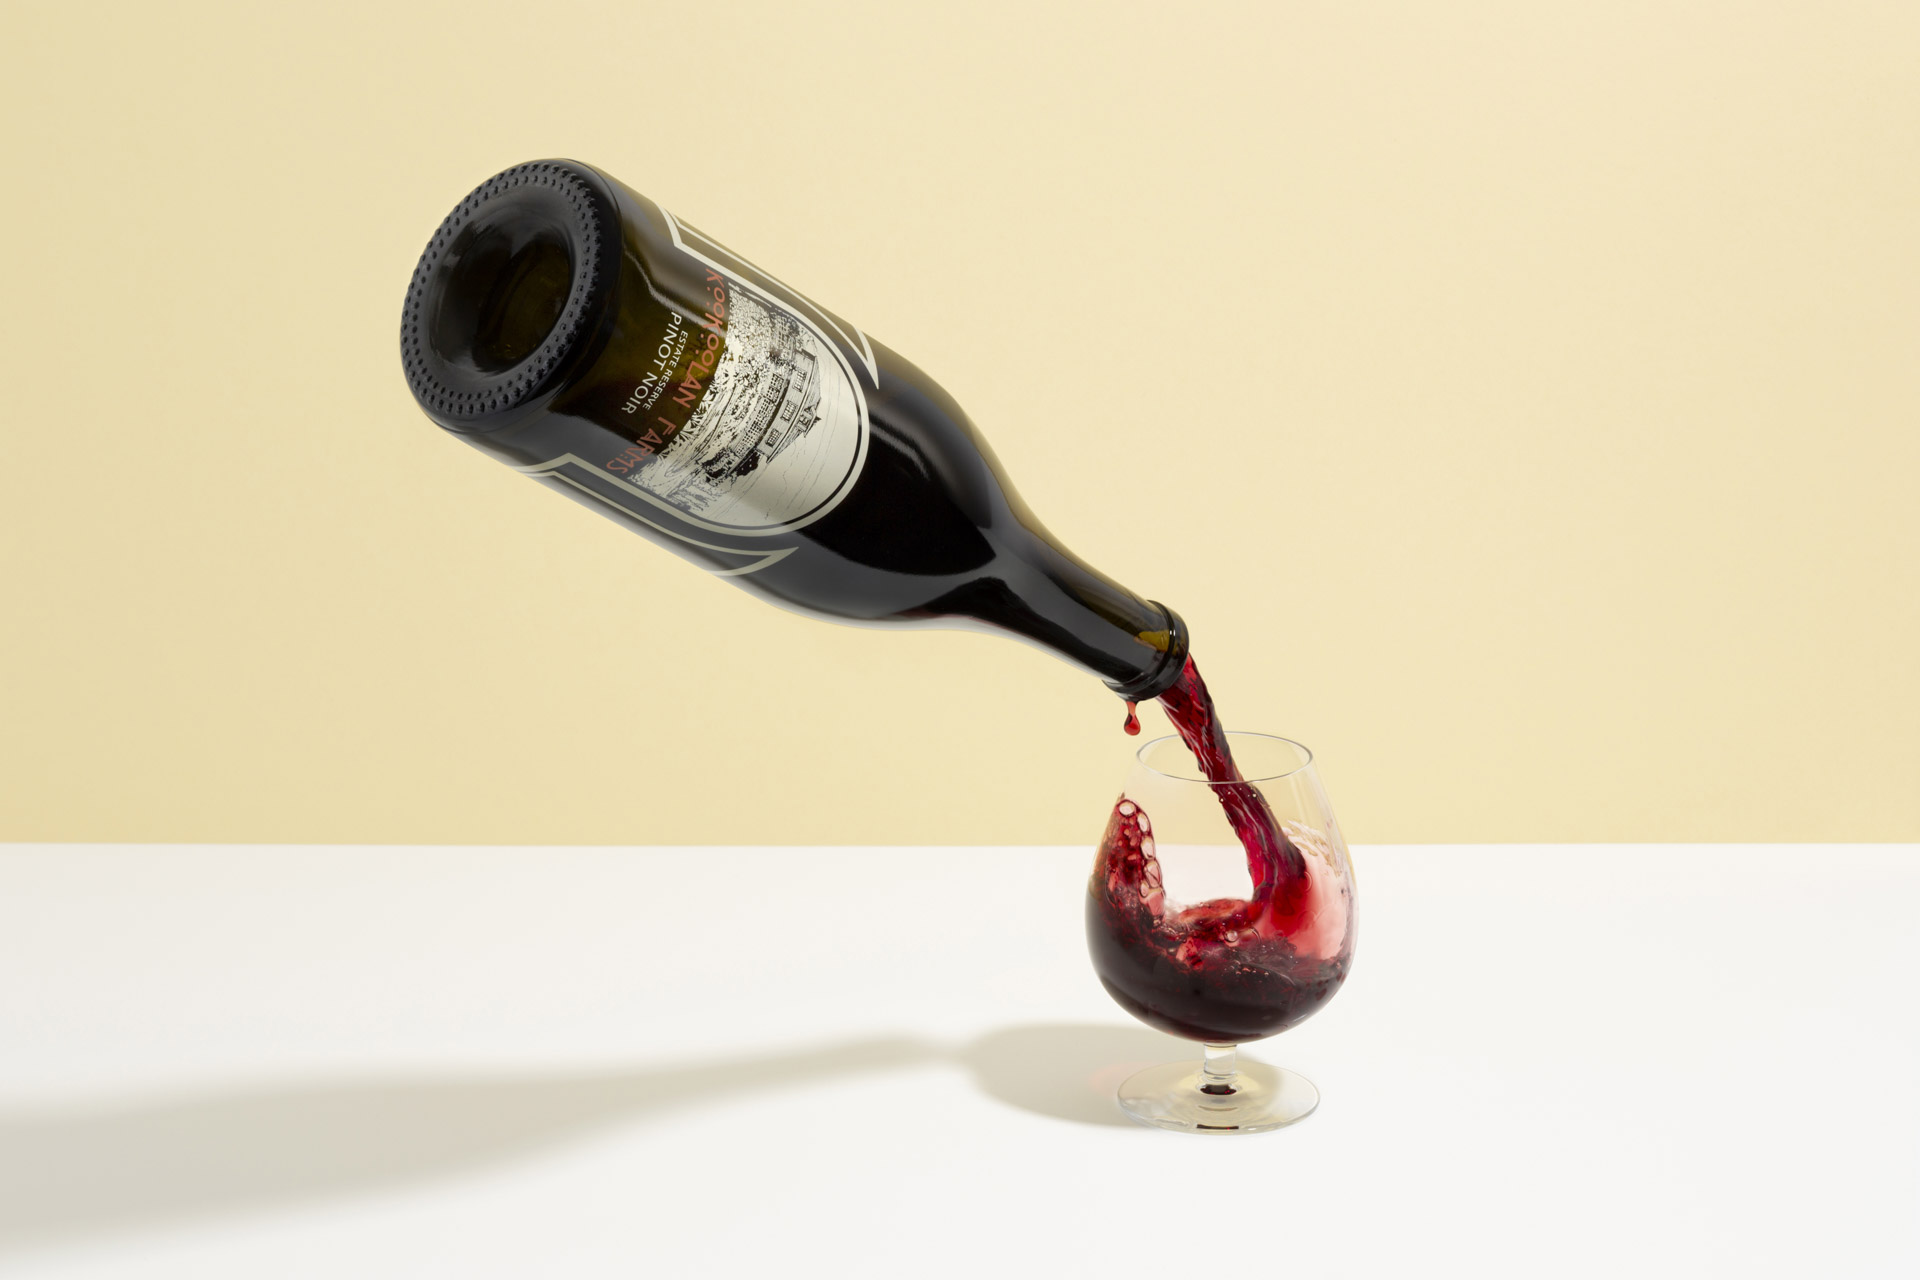 Rotweinflasche die in der Luft gleichzeitig ein glass Wein füllt.